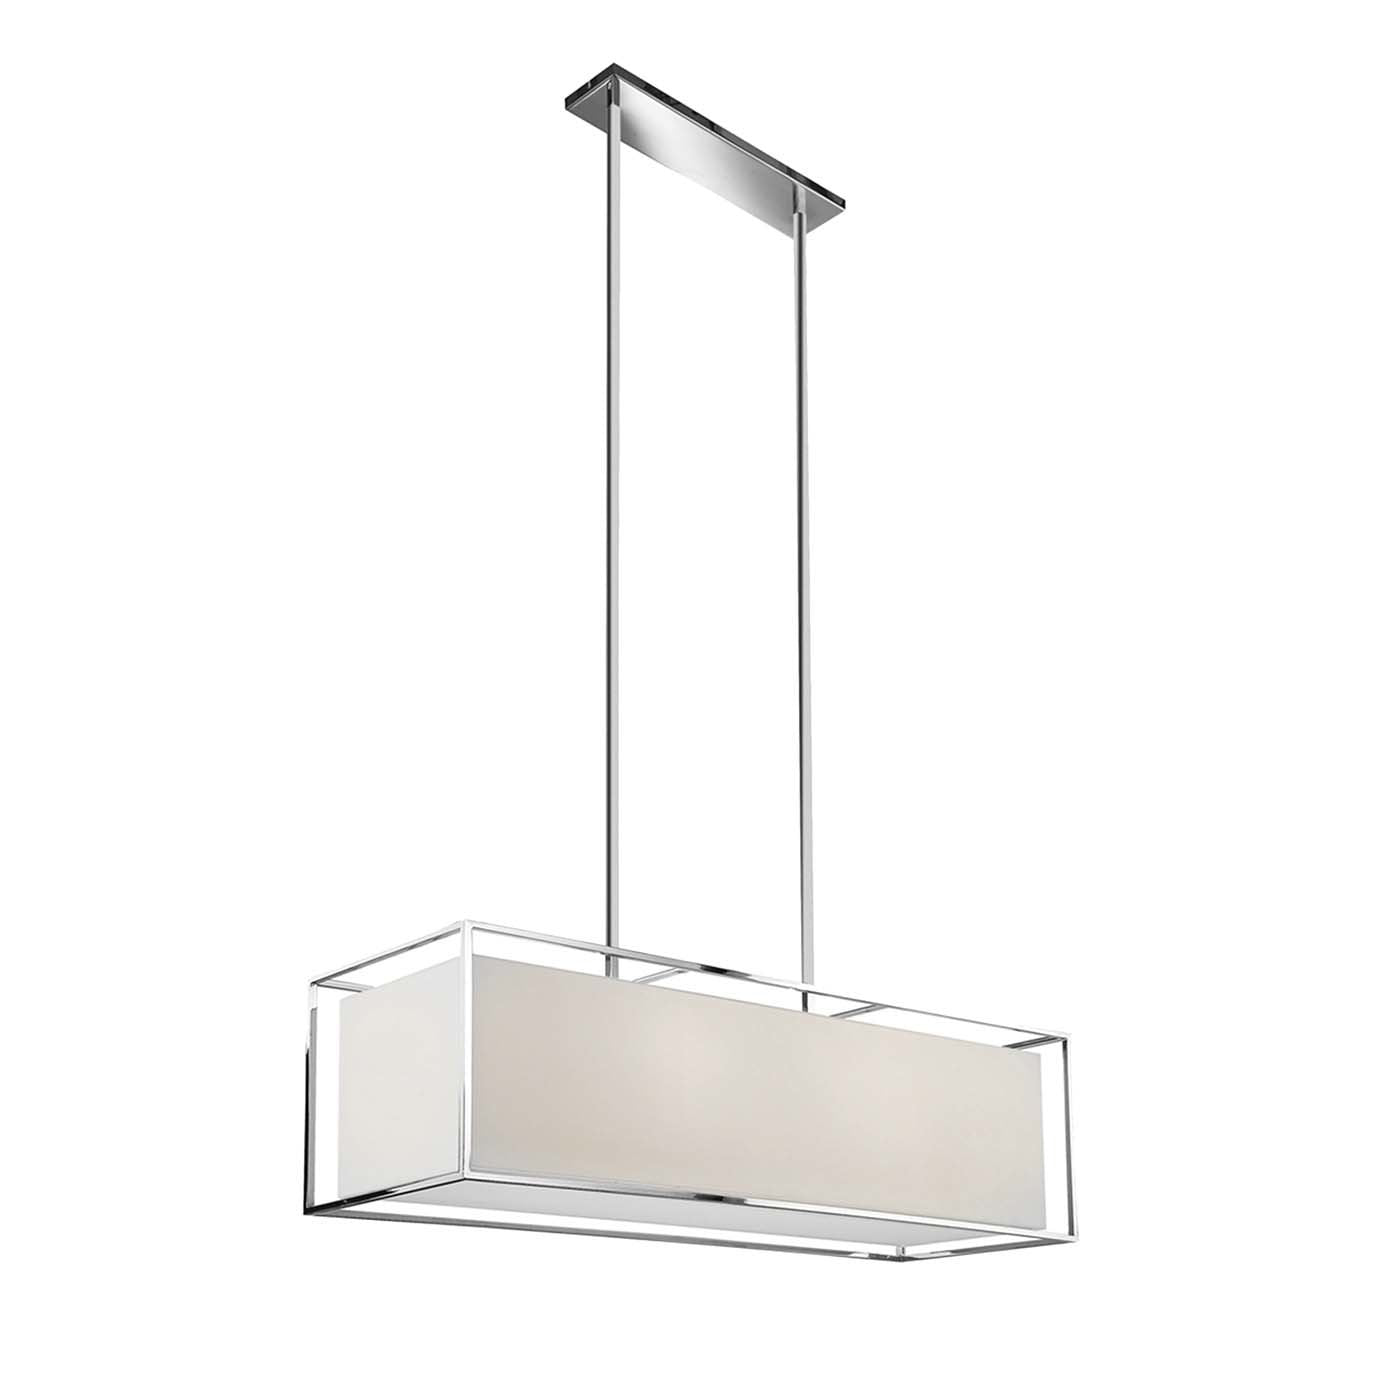 Lampe suspendue rectangulaire carrée - Vue principale